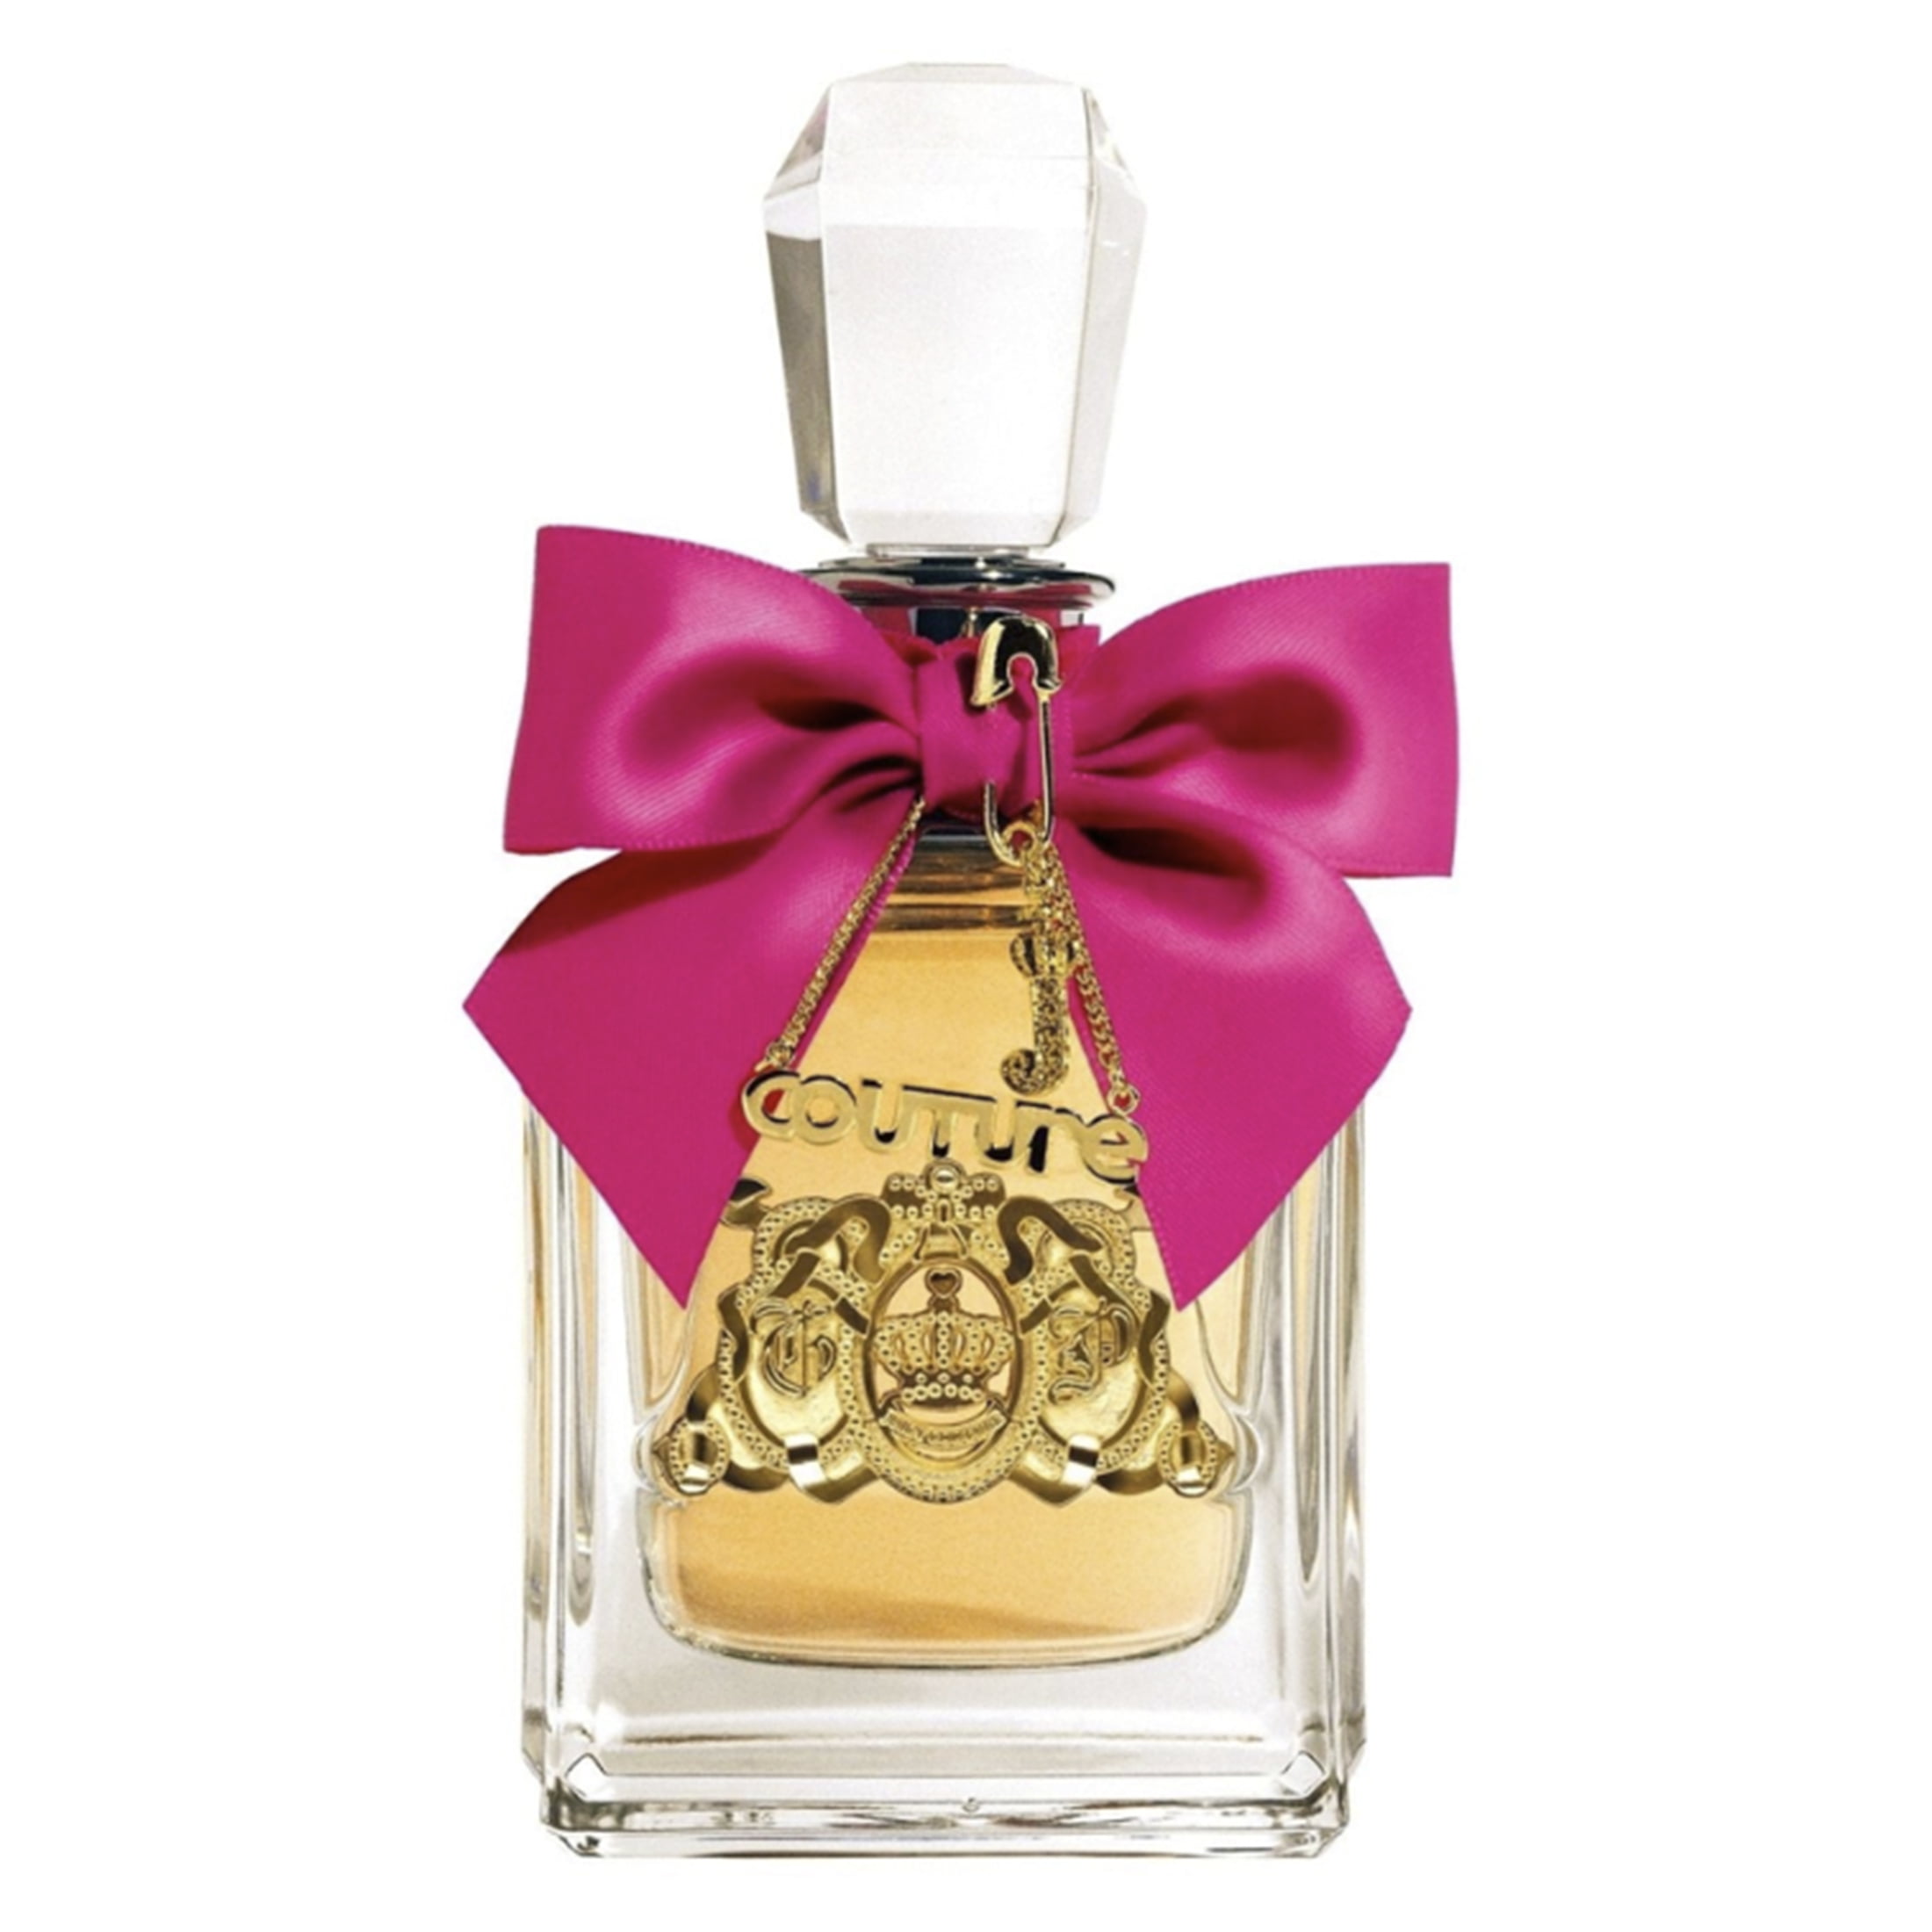 Juicy Couture Viva La Juicy Eau de Parfum Perfume for Women, 3.4 Oz ...